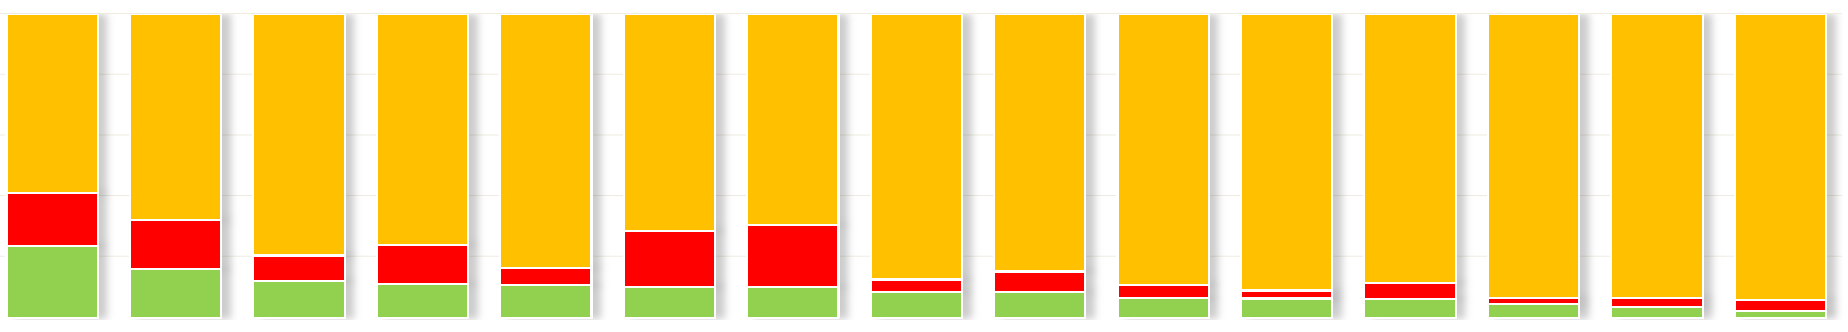 19% 14% průzkum TAROTOVÉ sběr: 30.6. - 31.7. 2015 2 2/6 Jak vnímáte jednotlivé starosty / starostky?